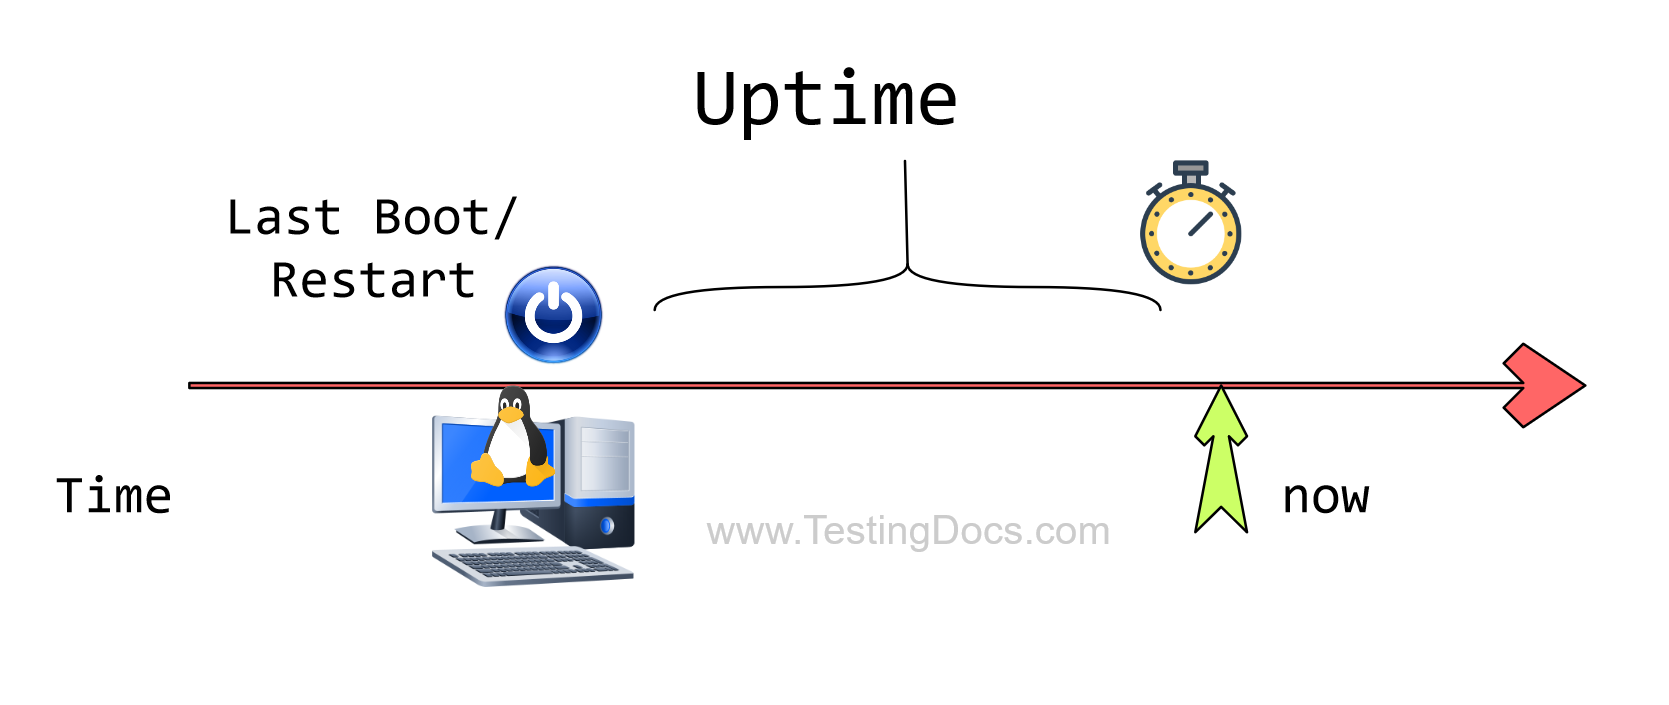 uptime Linux Command Illus